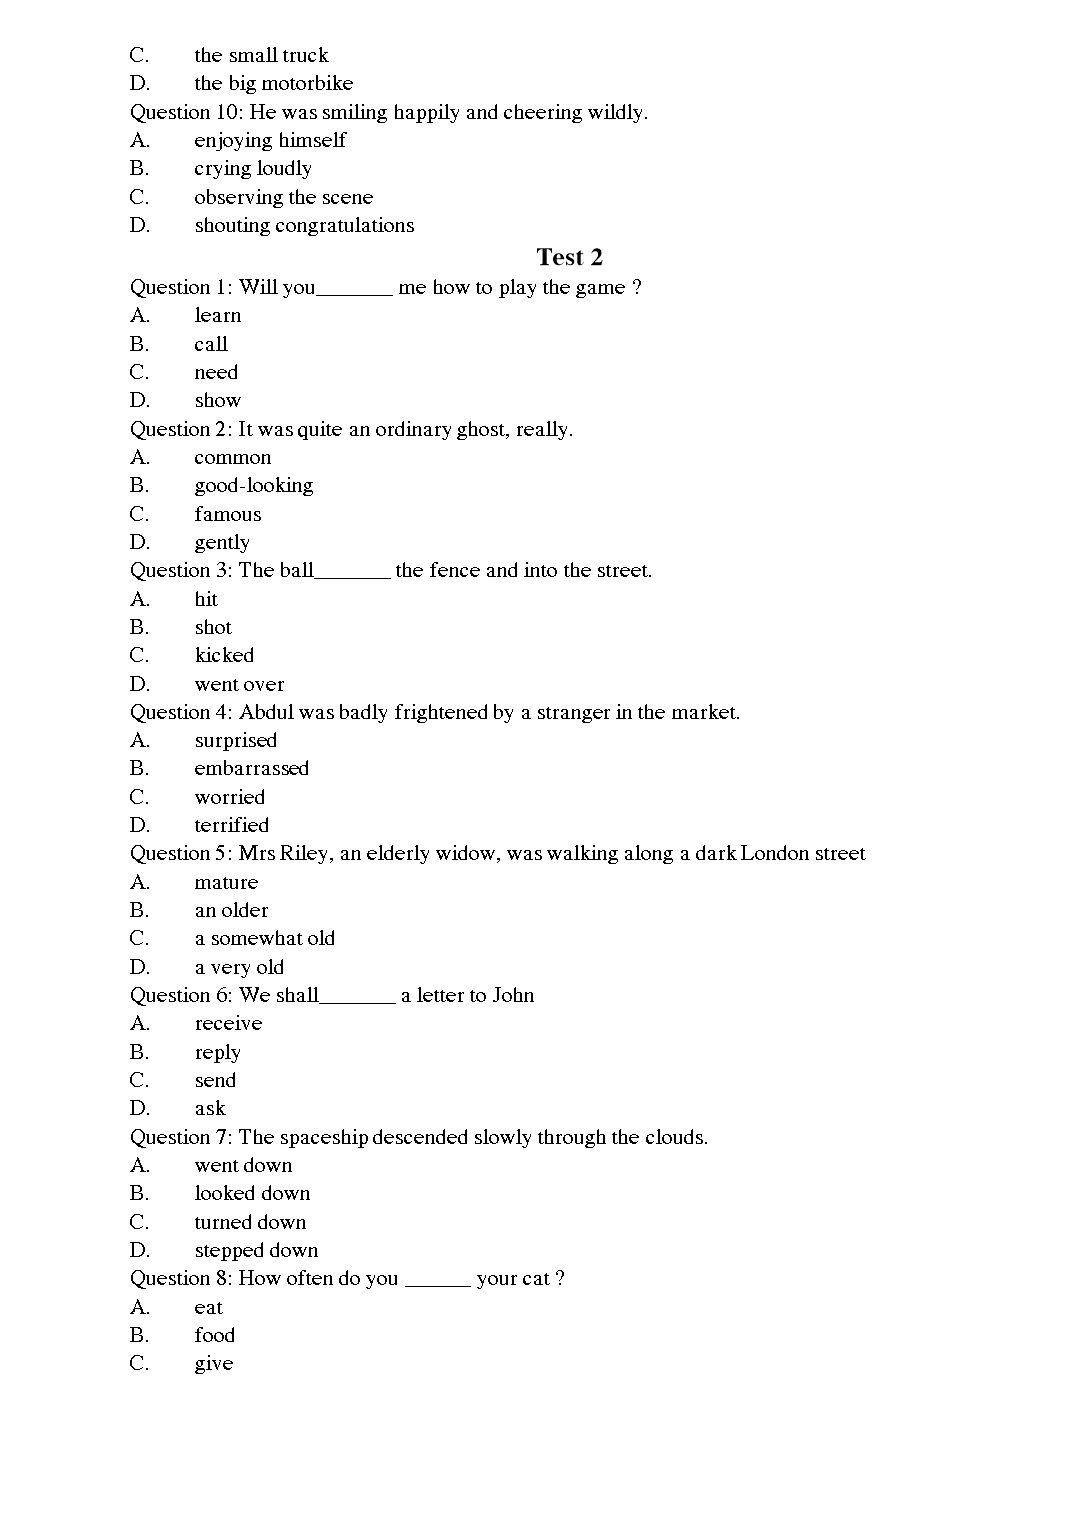 Tiếng Anh - Level A trang 2